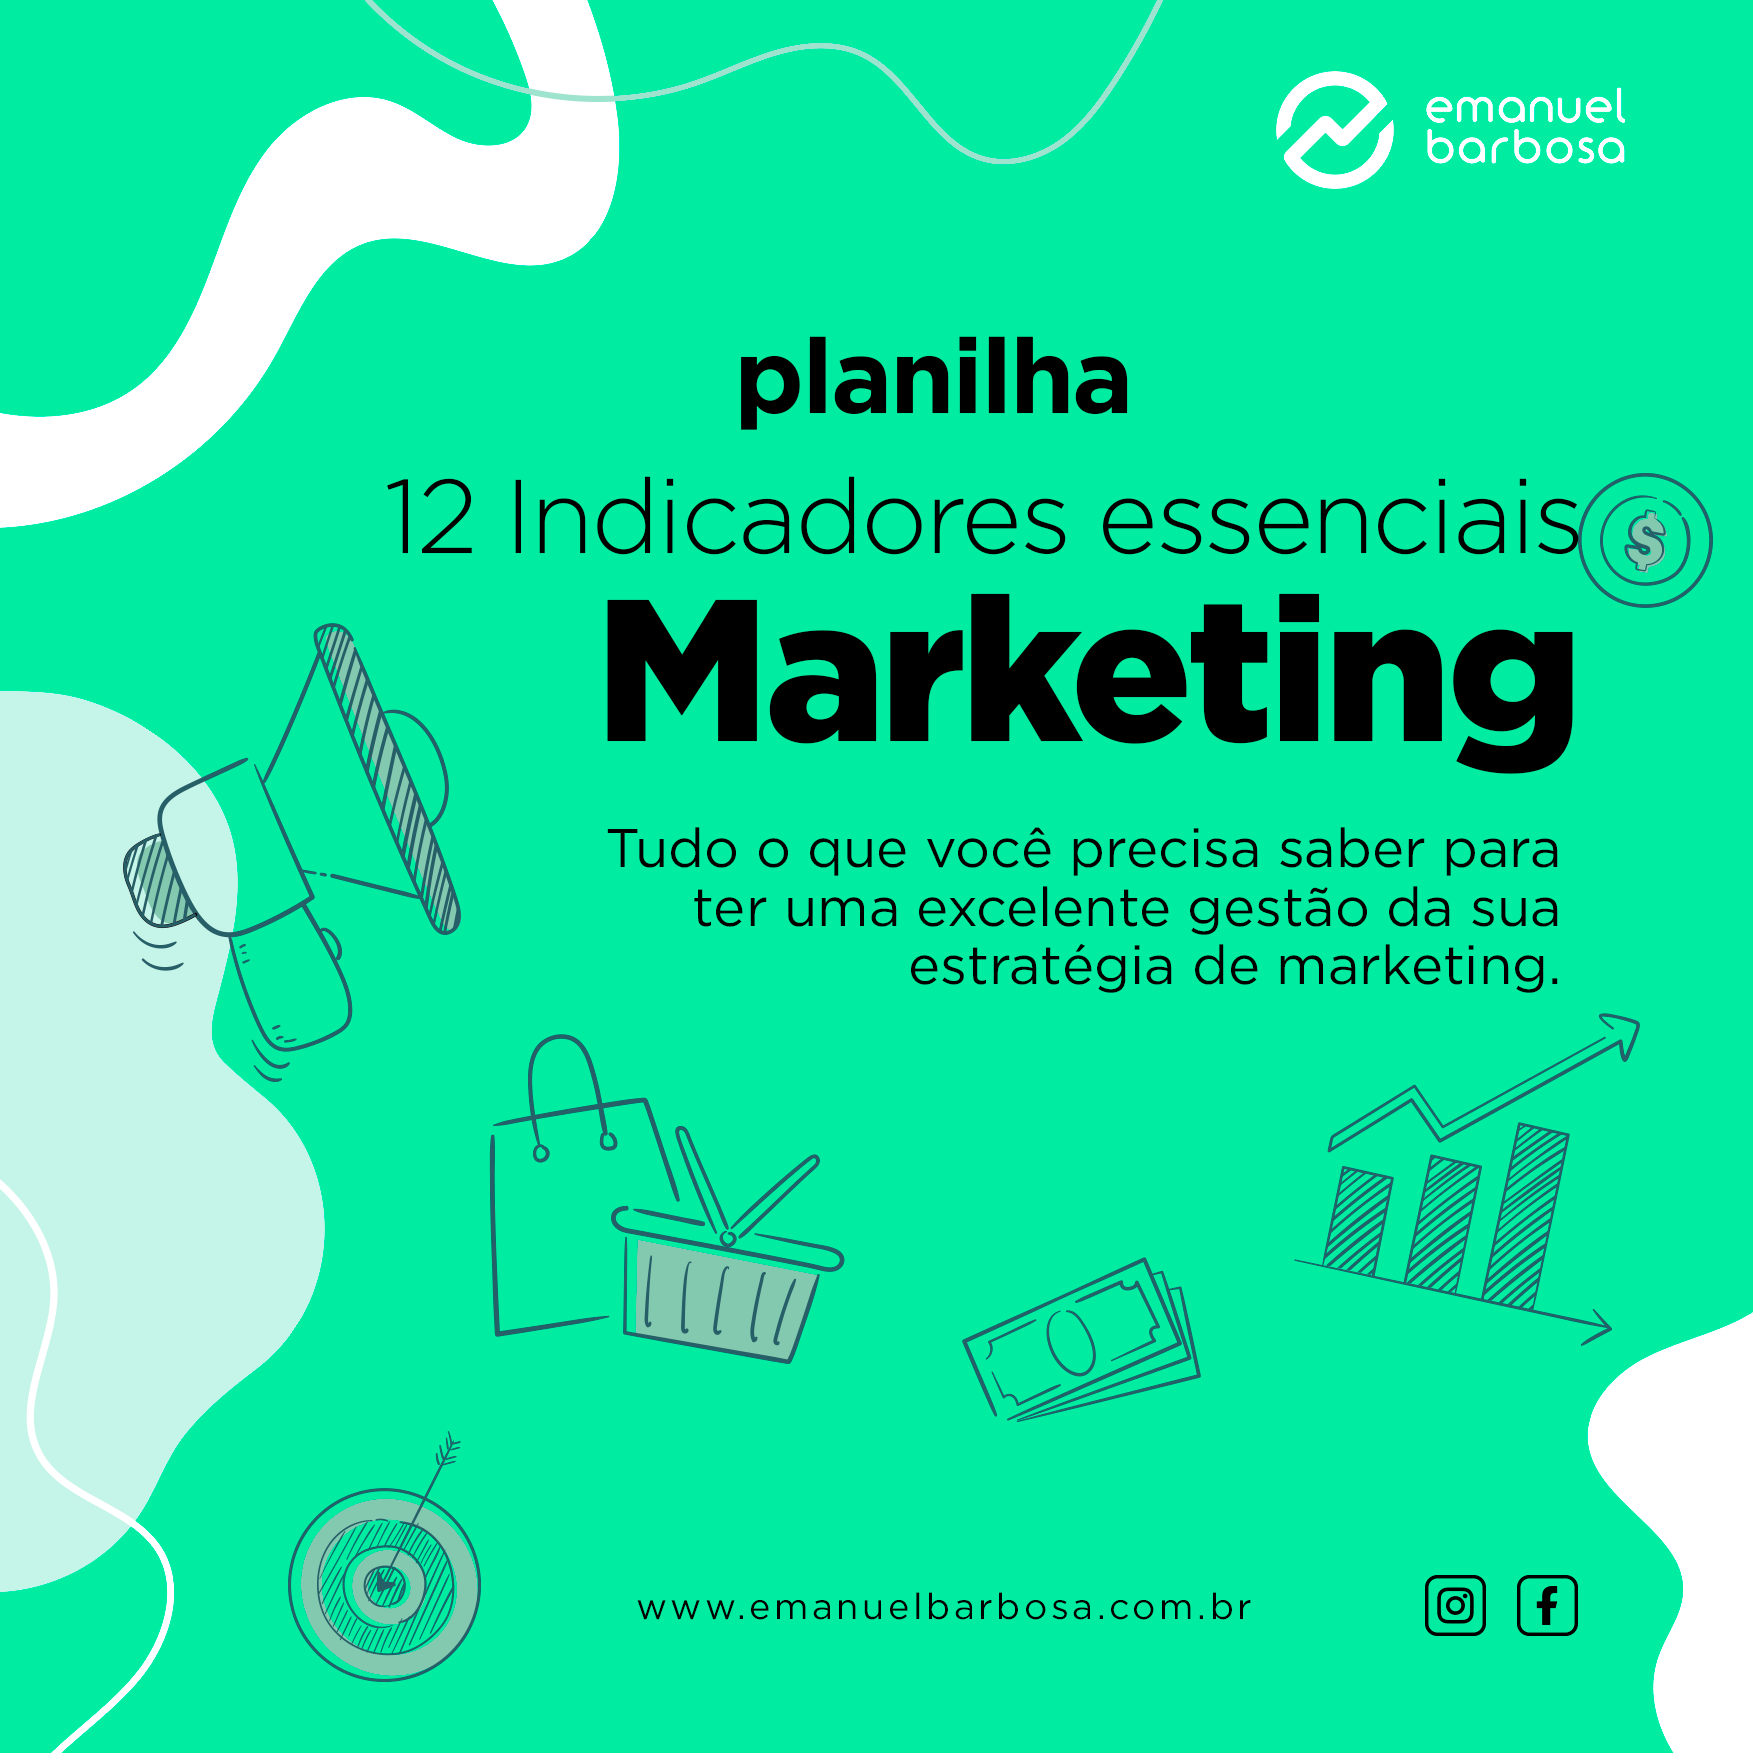 planilha-12-indicdores-de-marketing-essenciais-para-qualquer-negocio